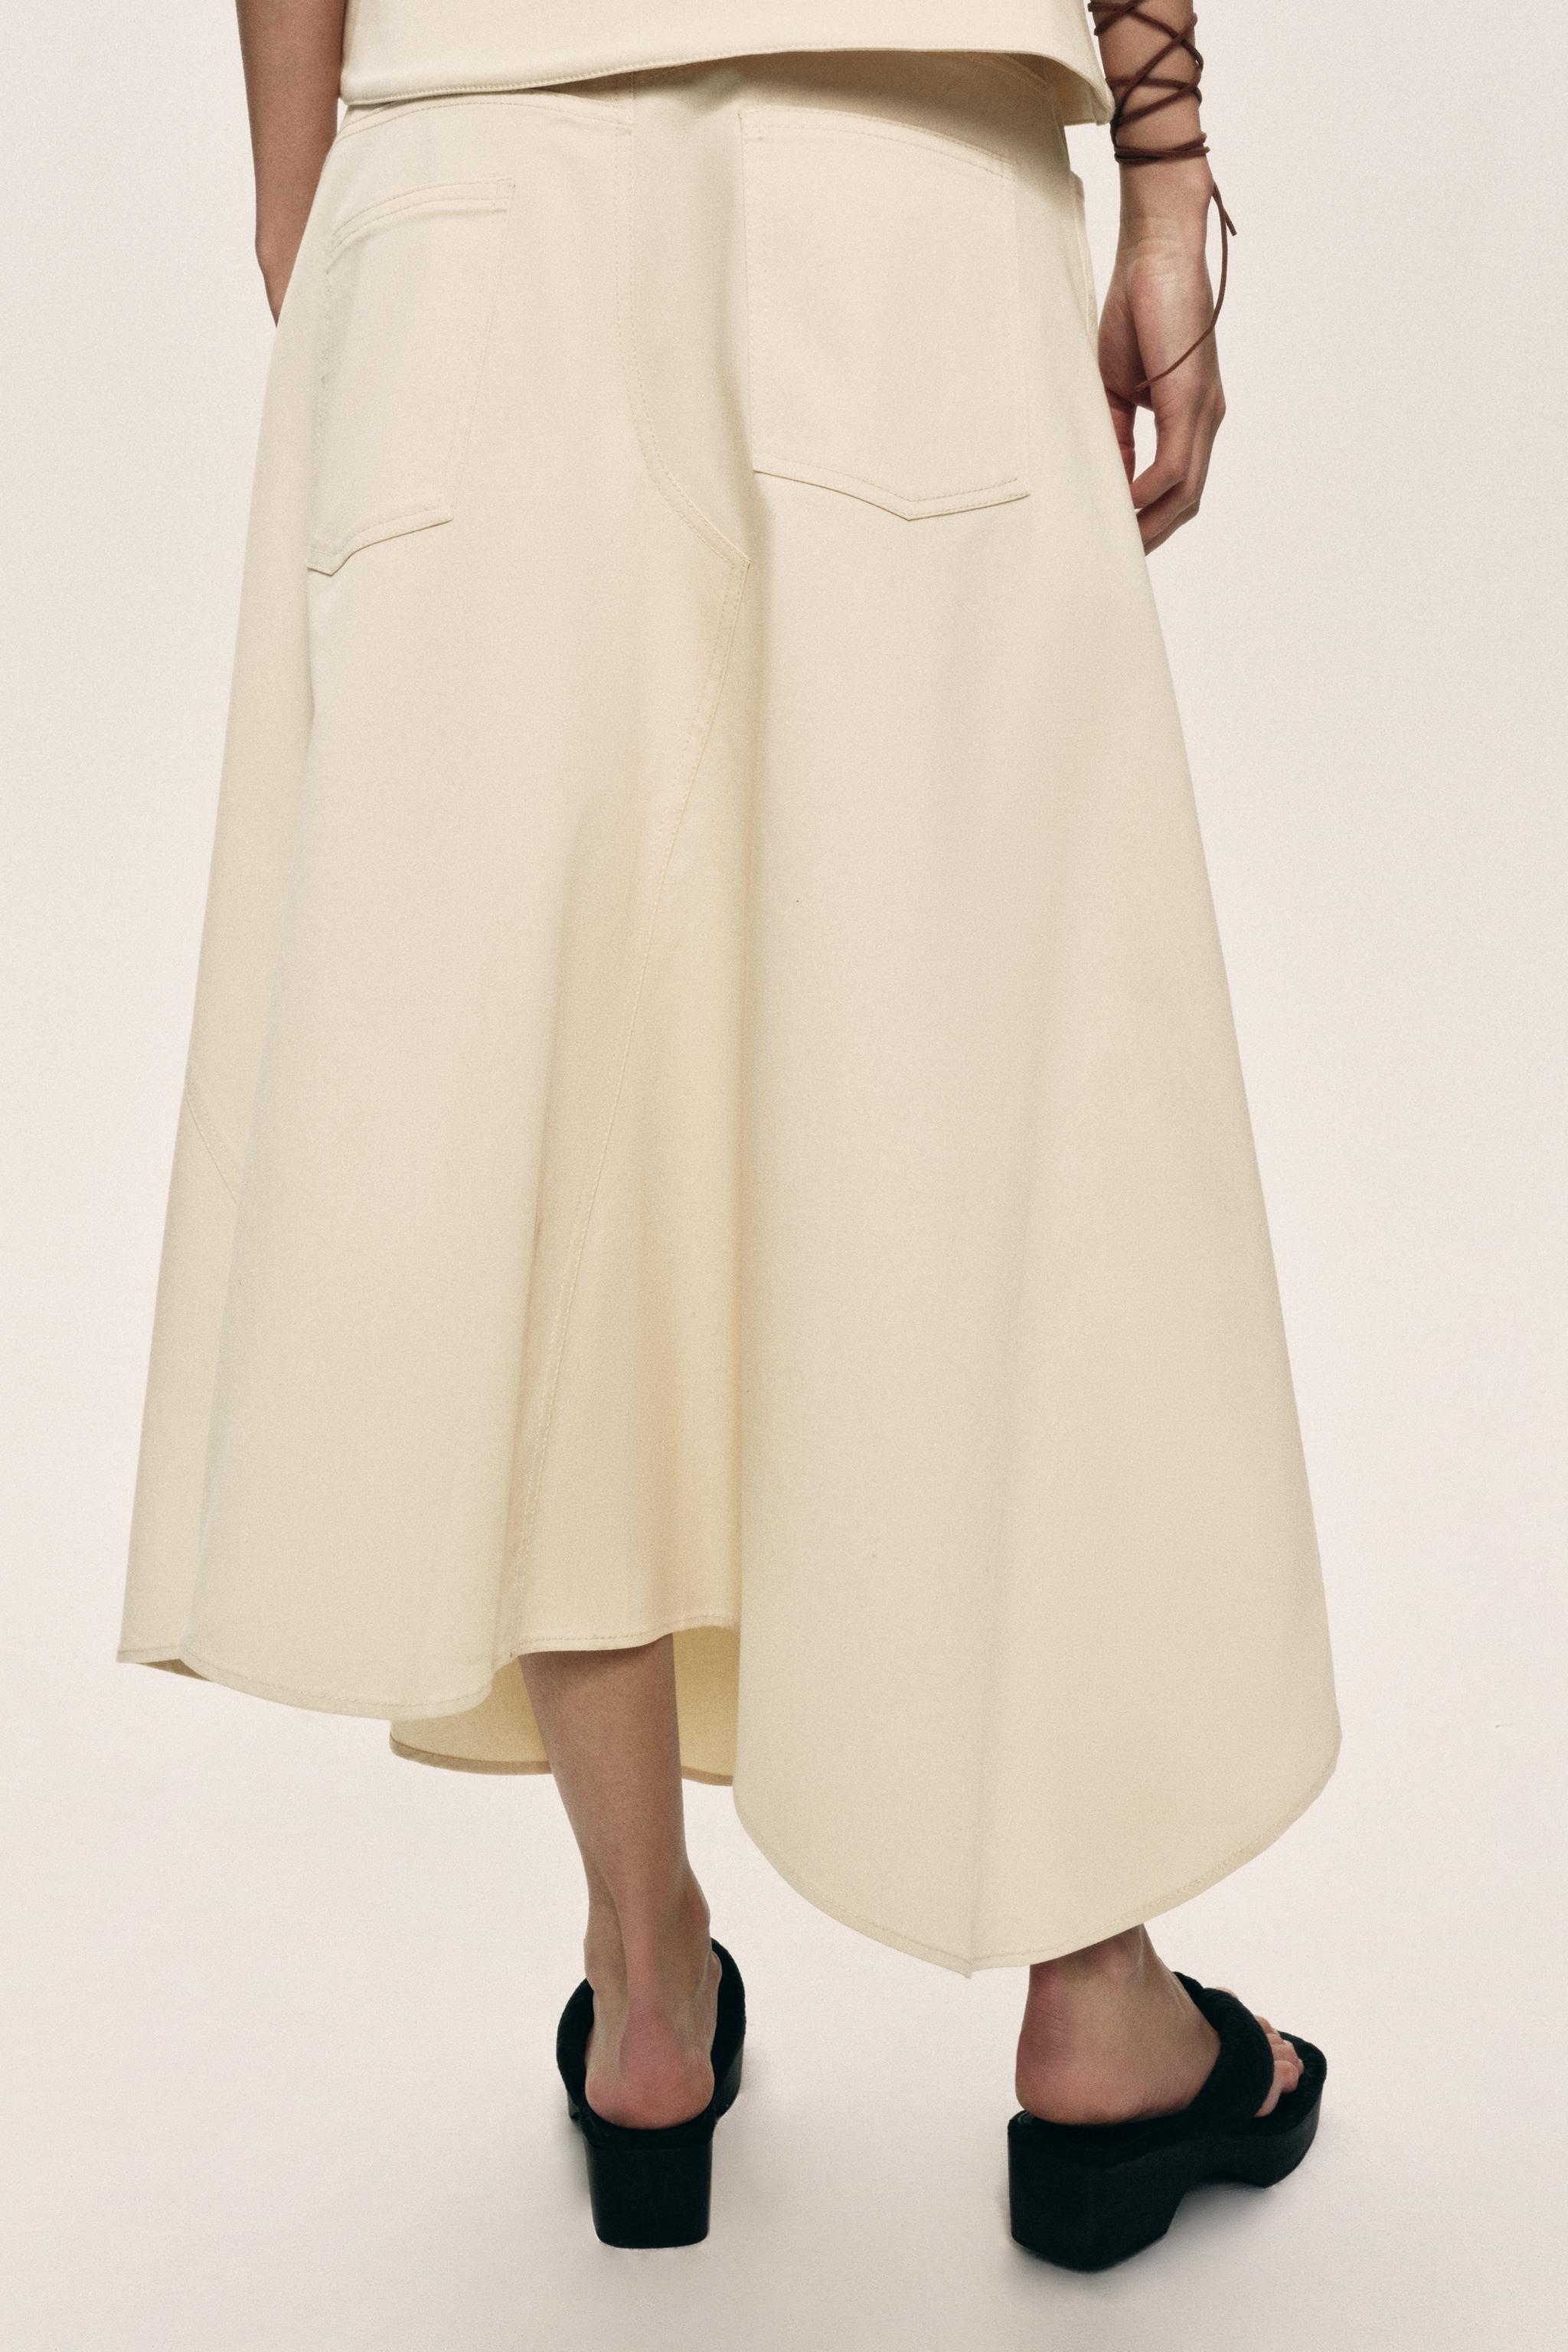 Zara produz saia quadriculada e é acusada de apropriação cultural